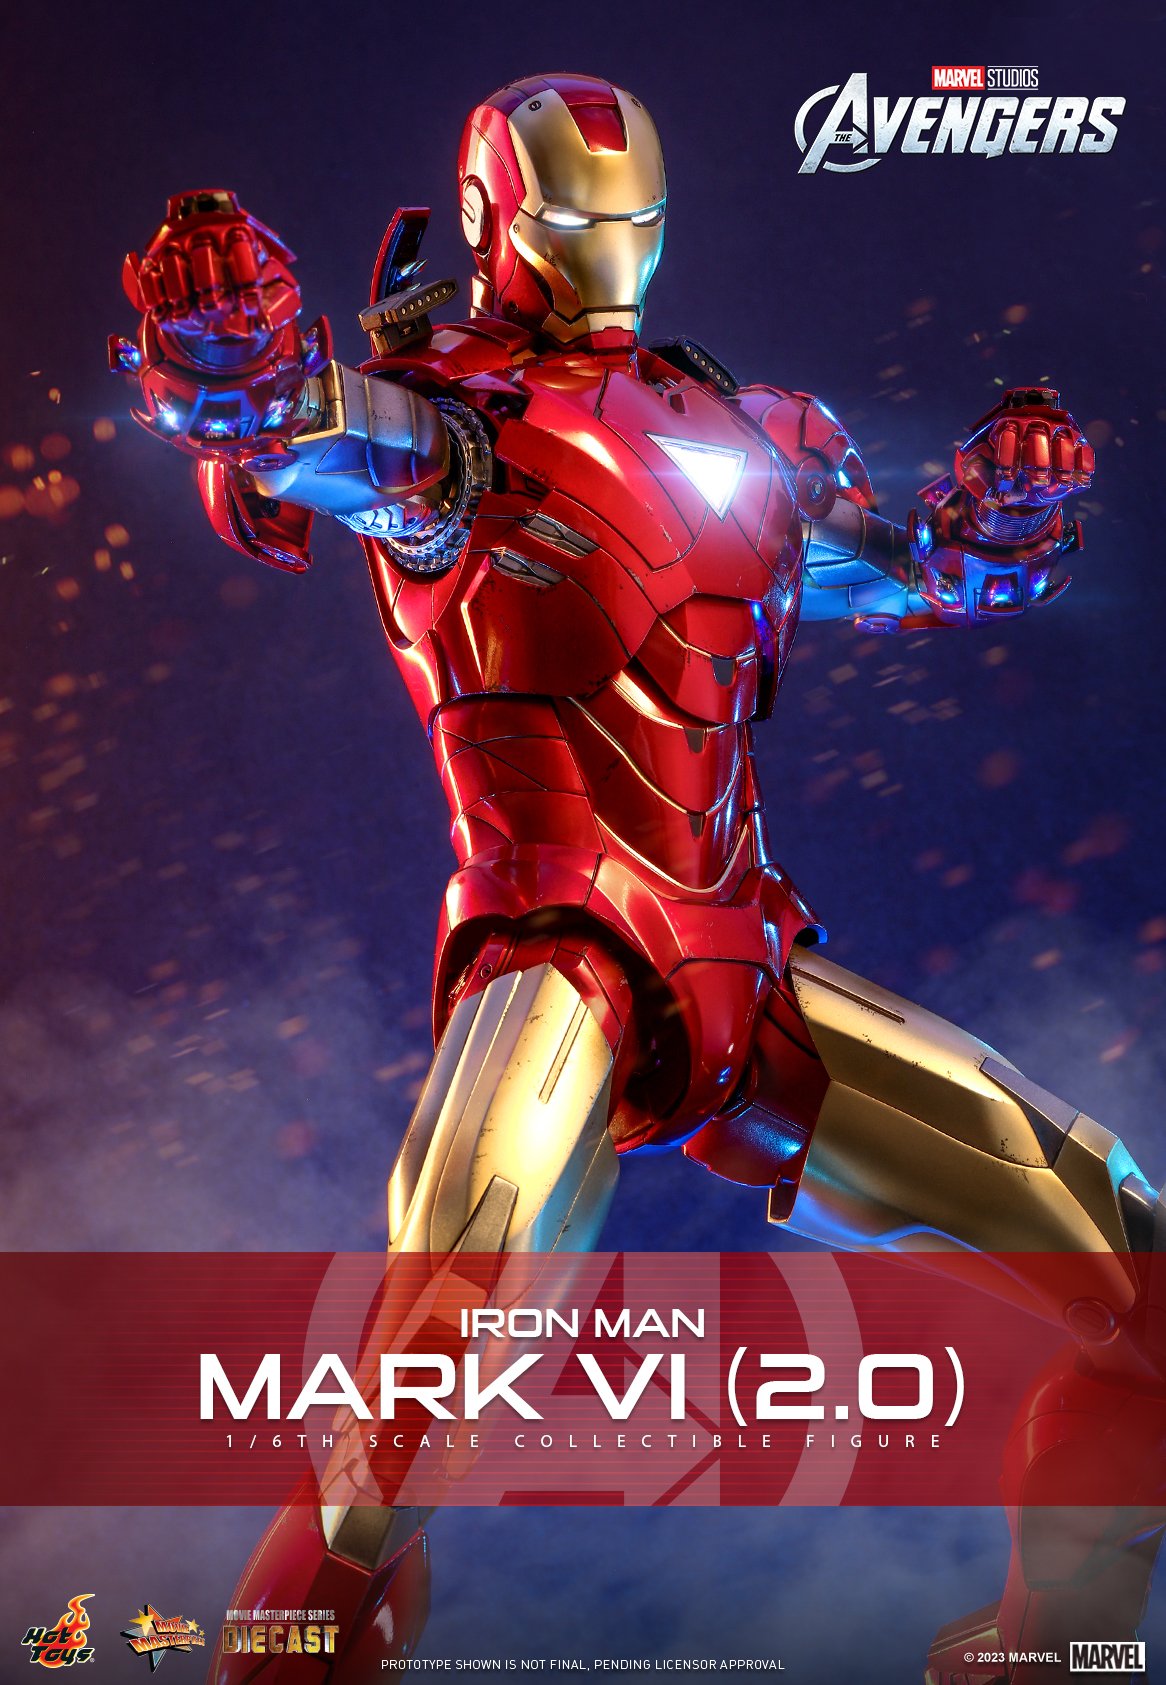 Hot Toys Iron Man Mark VI đang chờ đón bạn khám phá sự đẳng cấp và điêu khắc tinh xảo của một trong những bộ sưu tập mô hình Iron Man đẹp nhất từ trước đến nay. Nếu bạn là fan cuồng của Tony Stark, đây chắc chắn là một sản phẩm không thể bỏ qua!